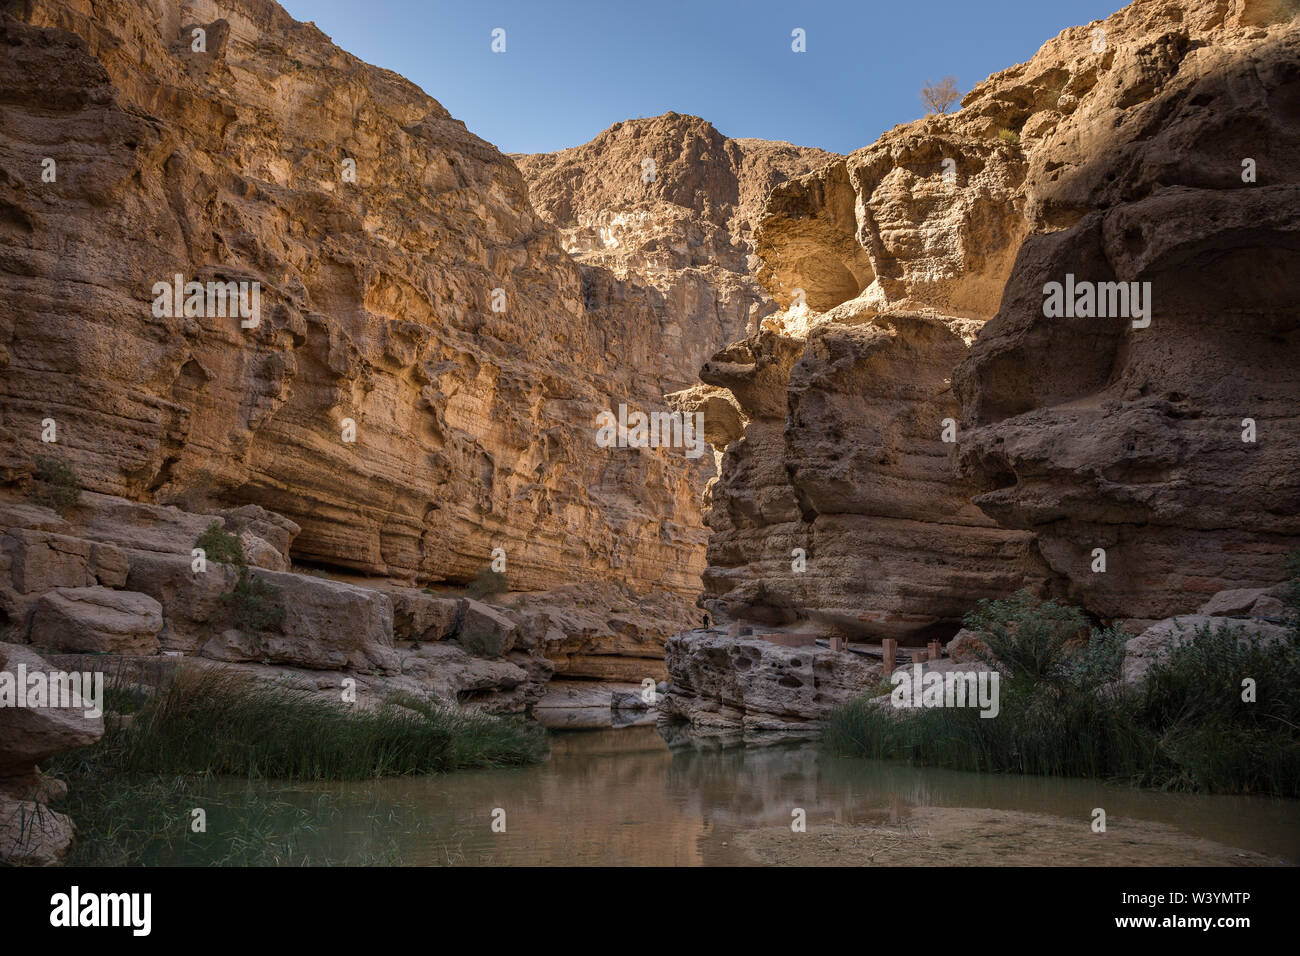 Wadi Shab, Oman Stock Photo